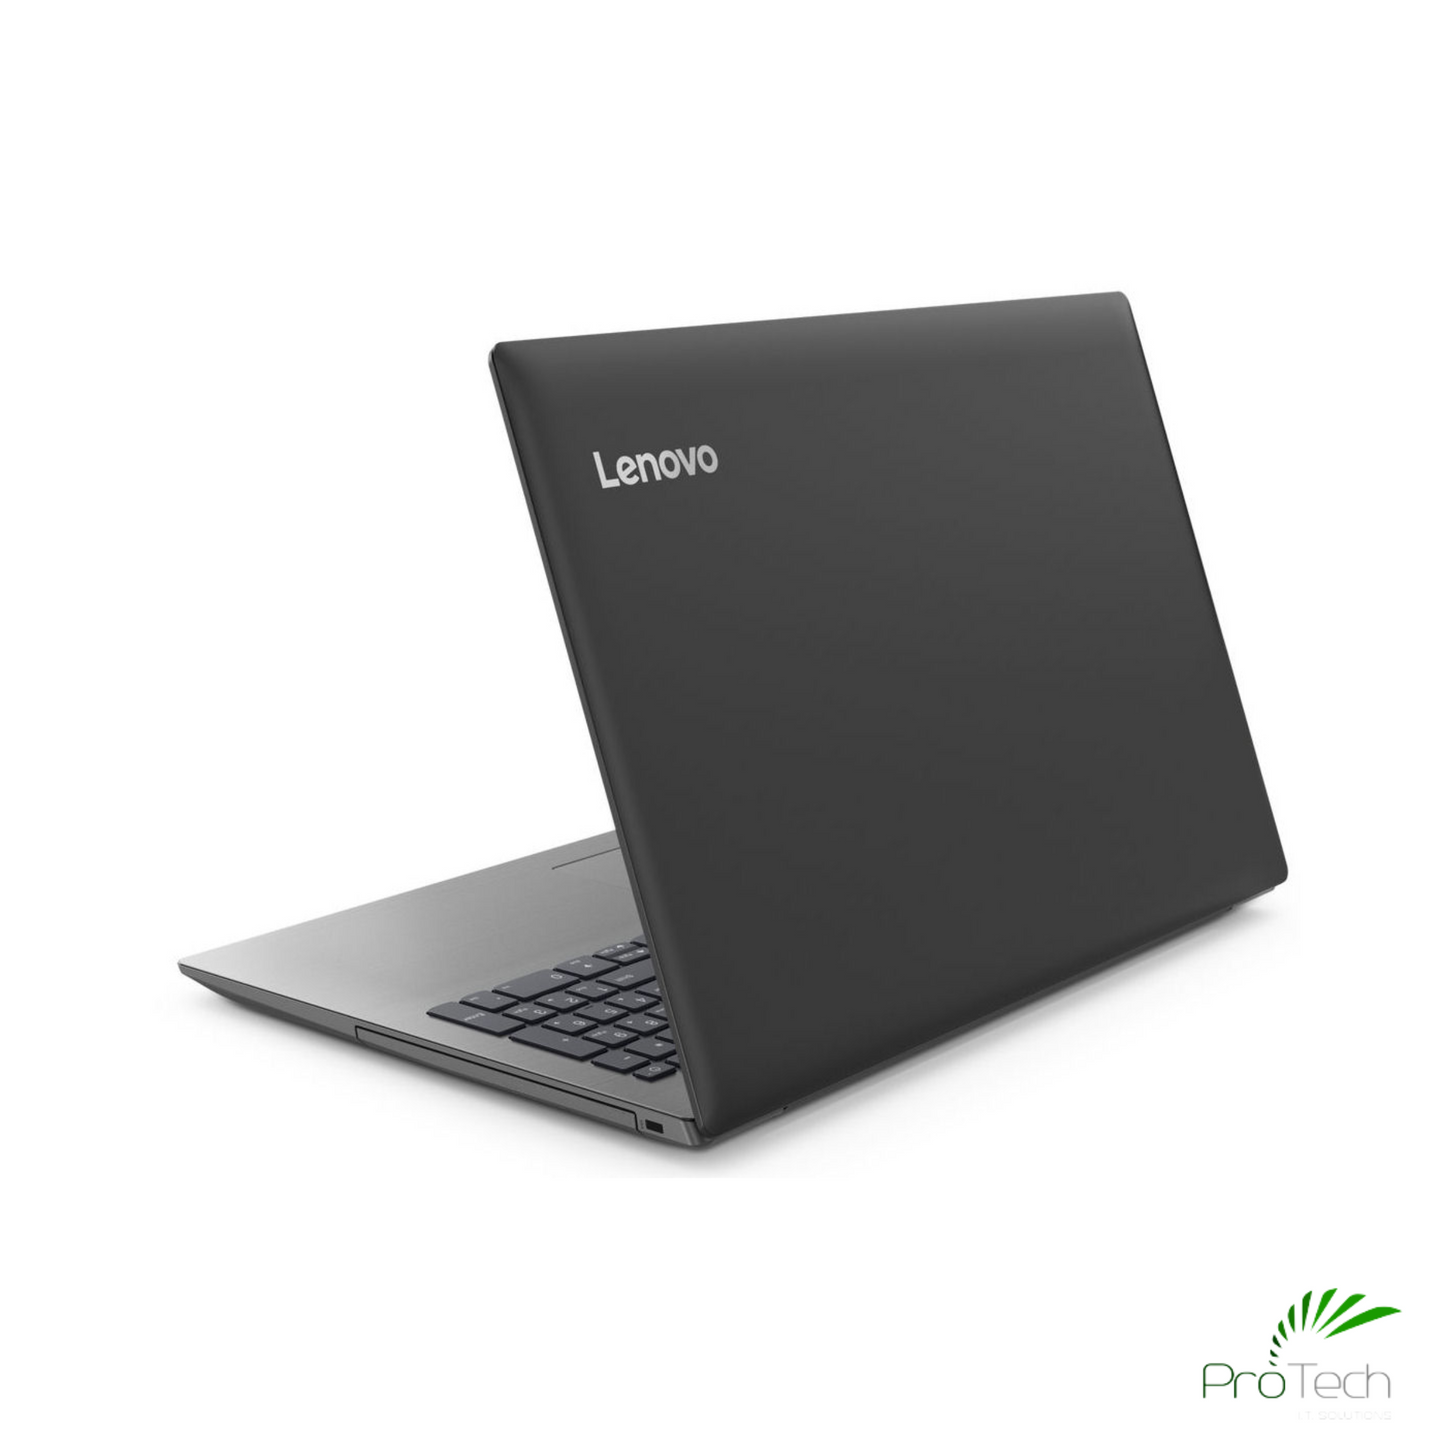 Lenovo IdeaPad 330-15IKB | Core i5 | 8GB RAM | 1TB HHD